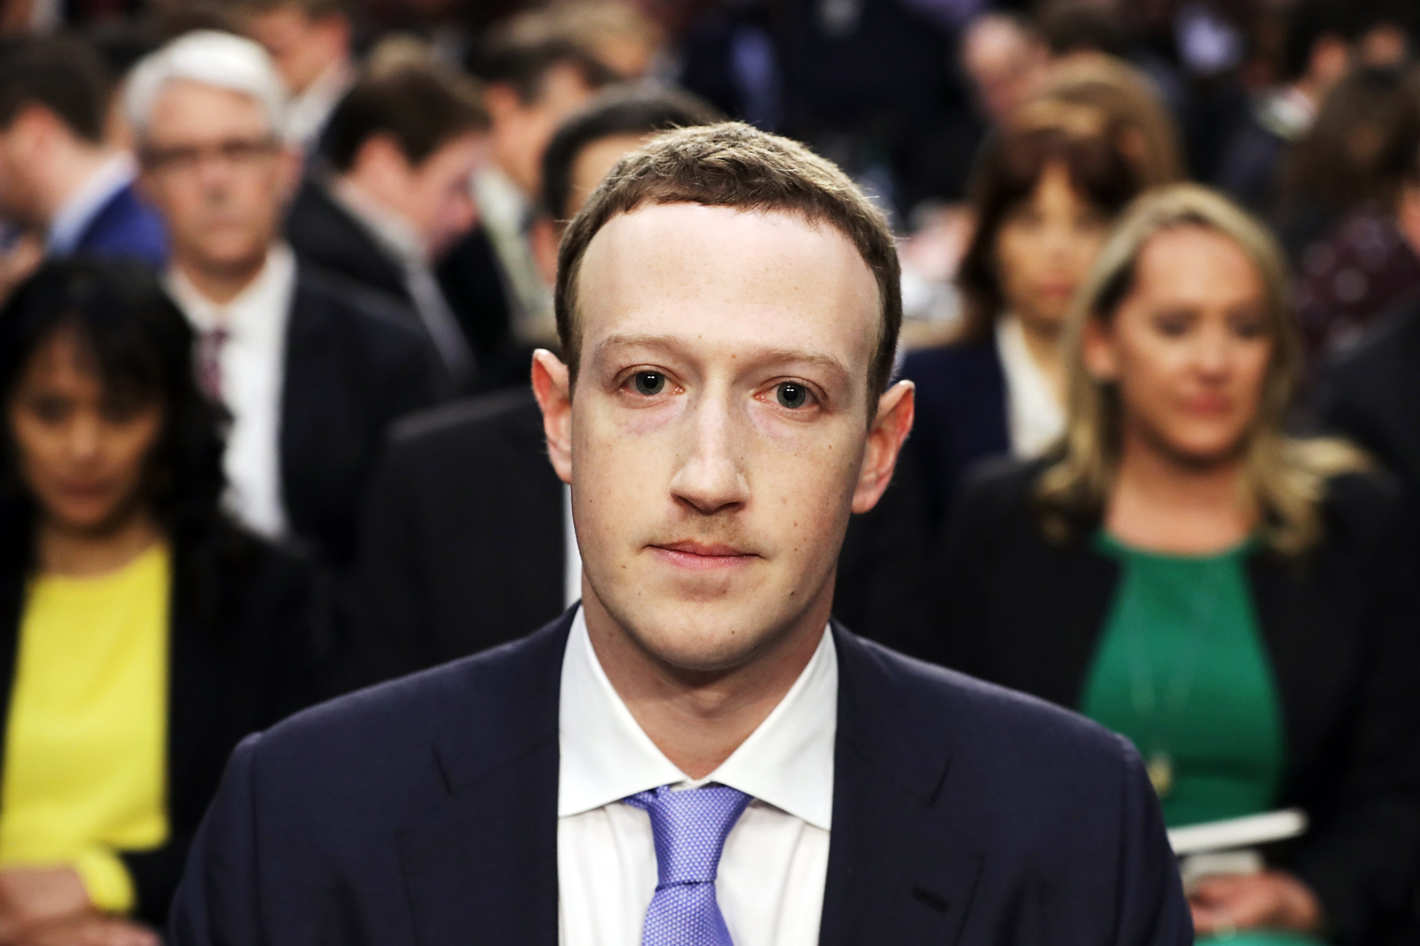 Το προφίλ του Zuckerberg, ανάμεσα σε εκείνα που “χτυπήθηκαν” από το σκάνδαλο  Cambridge Analytica